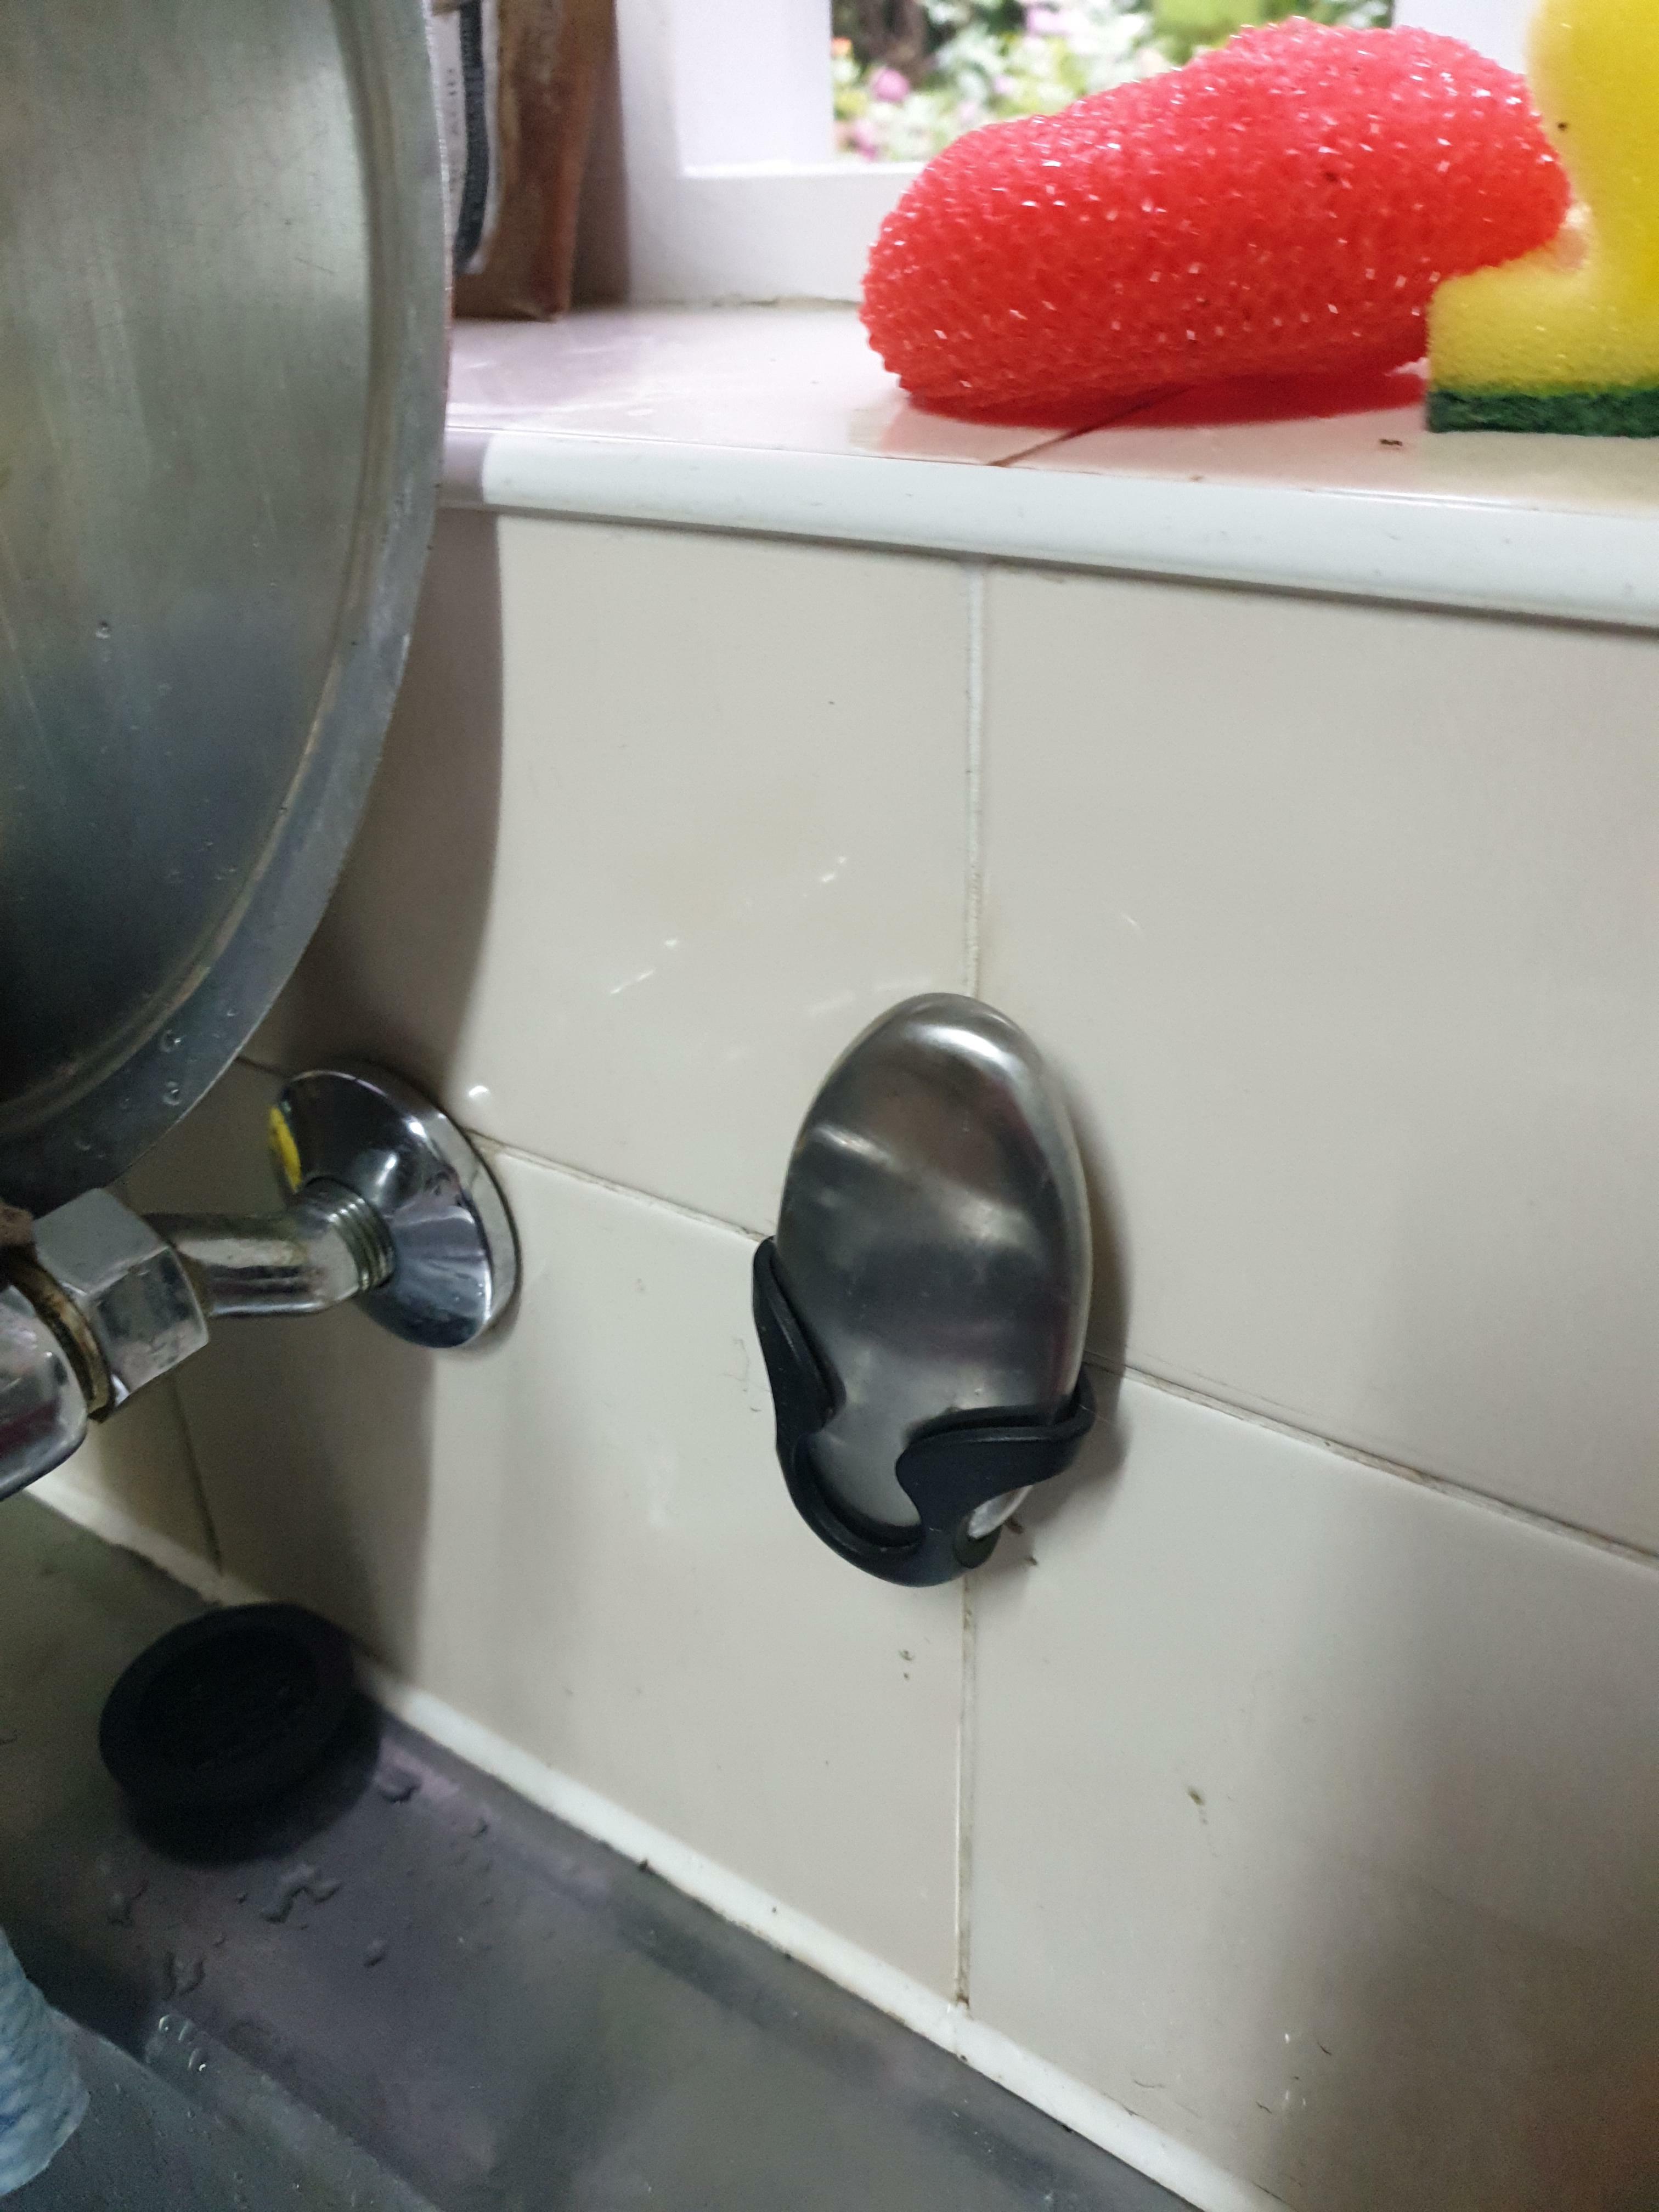 Qu'est-ce que ce truc métallique ovale dans un support en plastique fixé au mur de la cuisine à côté de l'évier ?